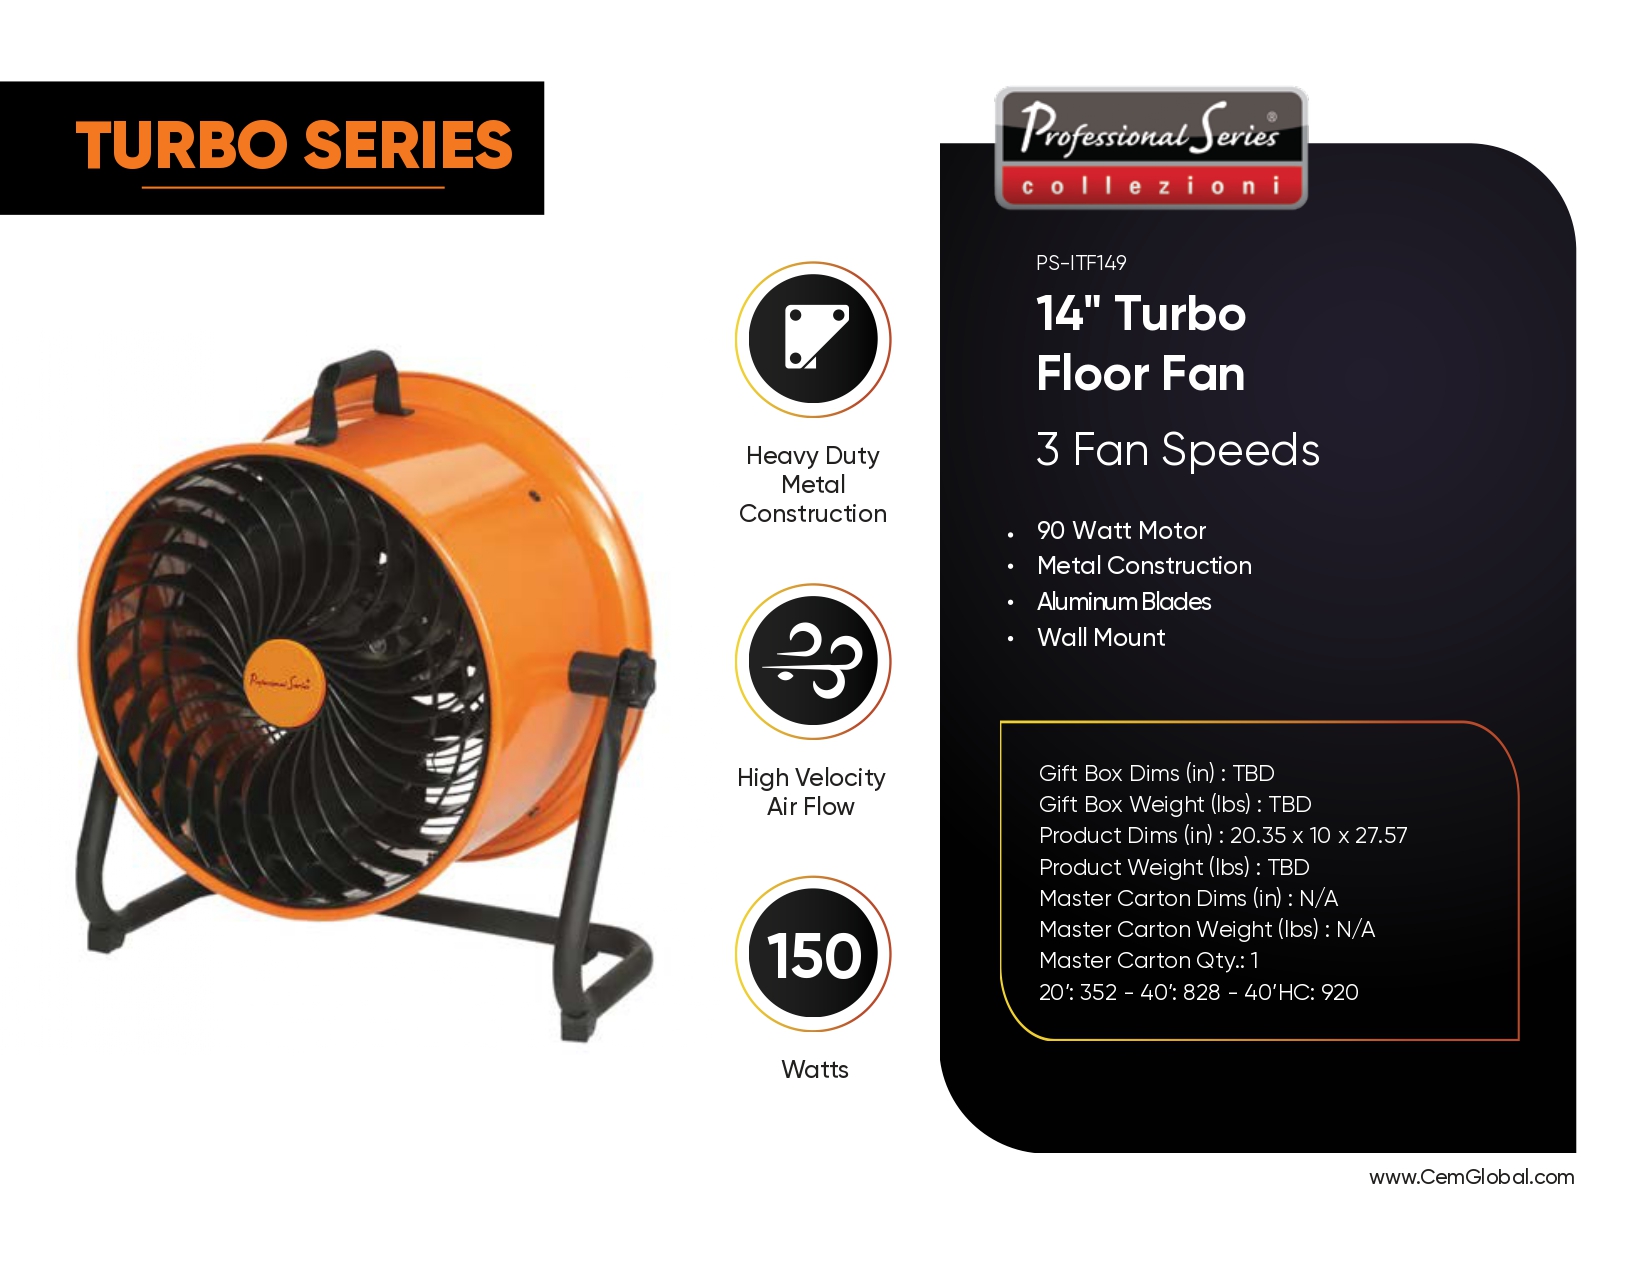 14" Turbo Floor Fan